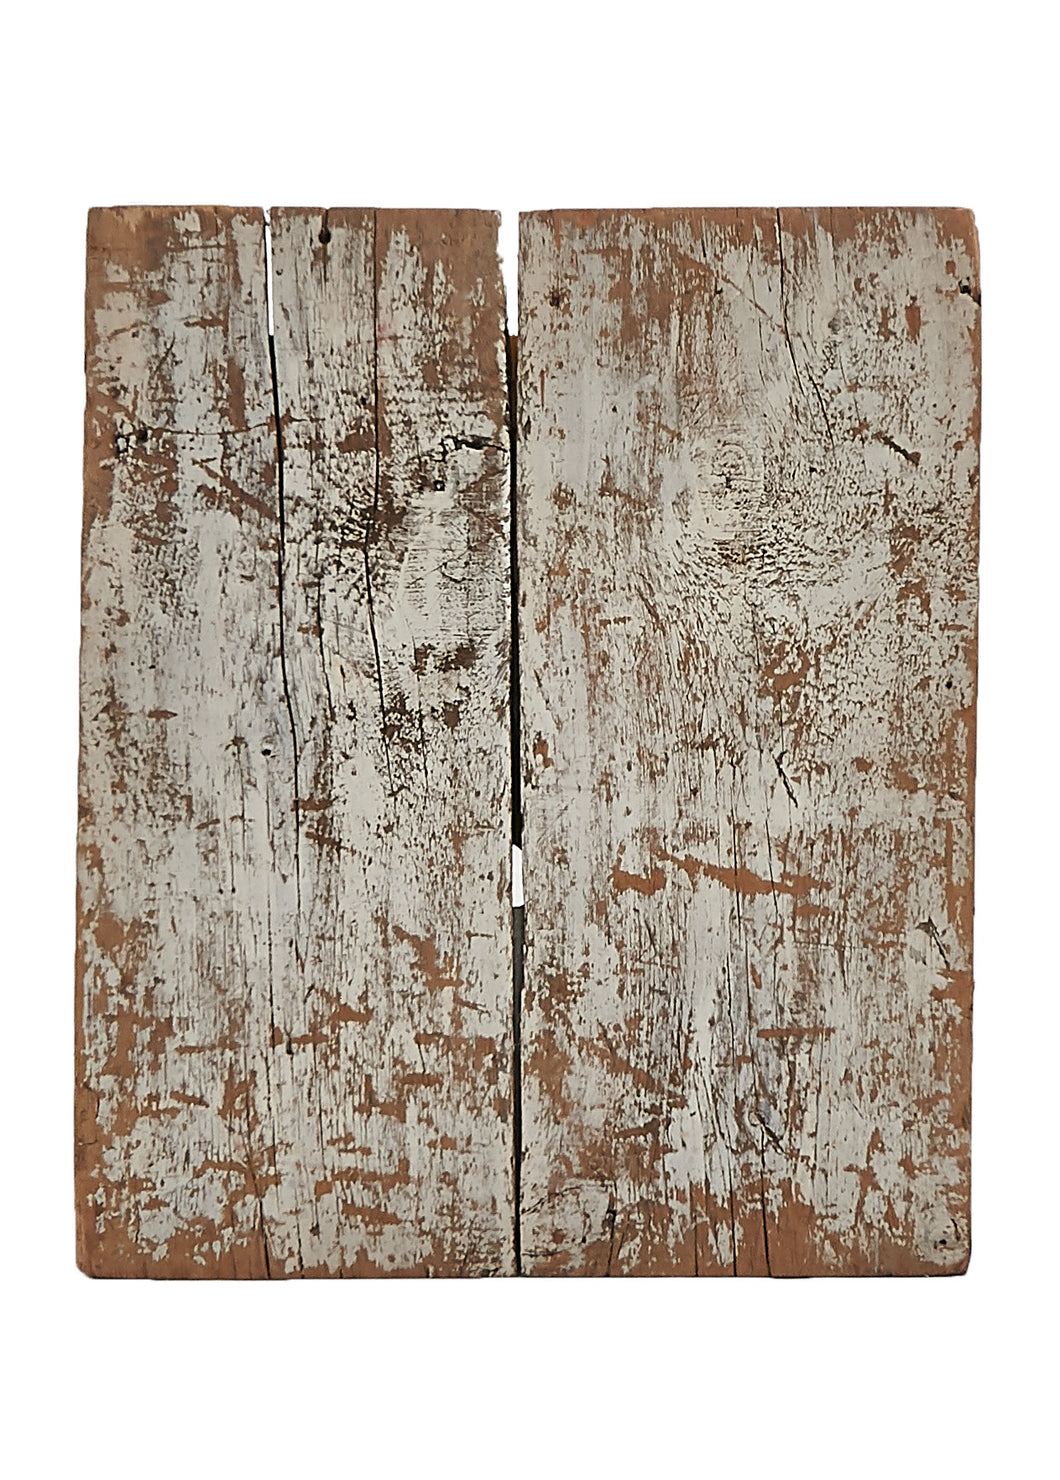 Sm Worn White 2 Panel Wood